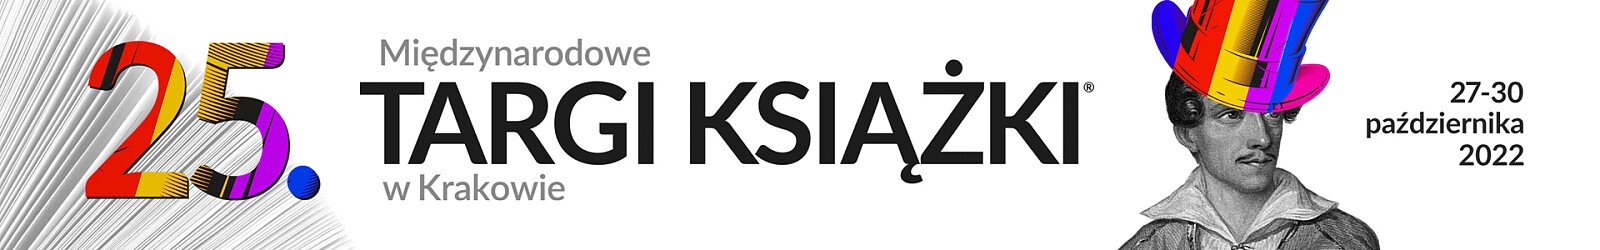 KSIAZKA22-baner-CMS(1920x300)_1.jpg [222.81 KB]